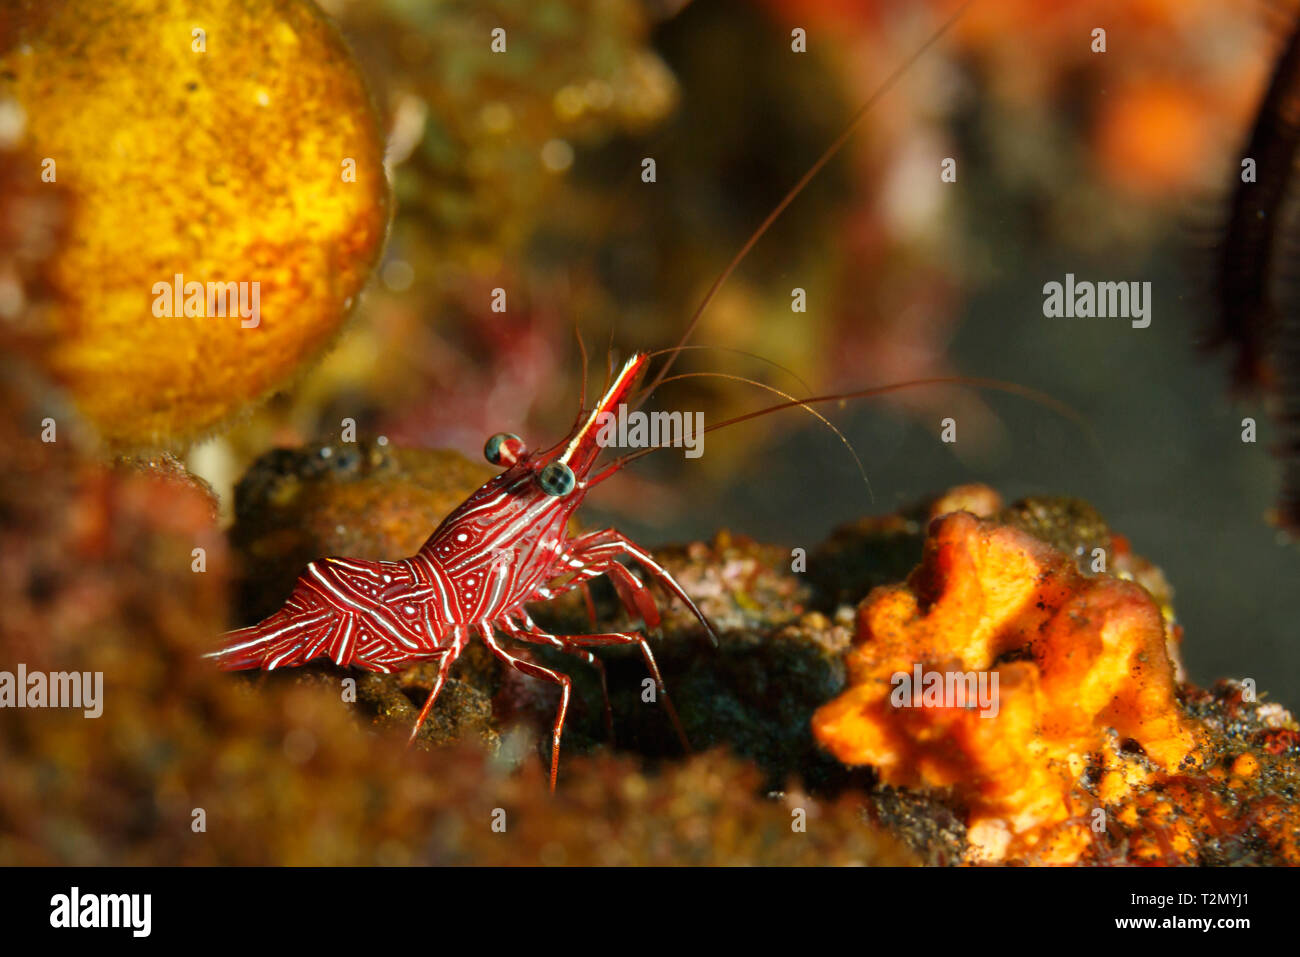 Primer plano de rayas rojas y blancas, camarón Hingebeak Rhynchocinetes durbanensis, caminando en el arrecife de coral Foto de stock